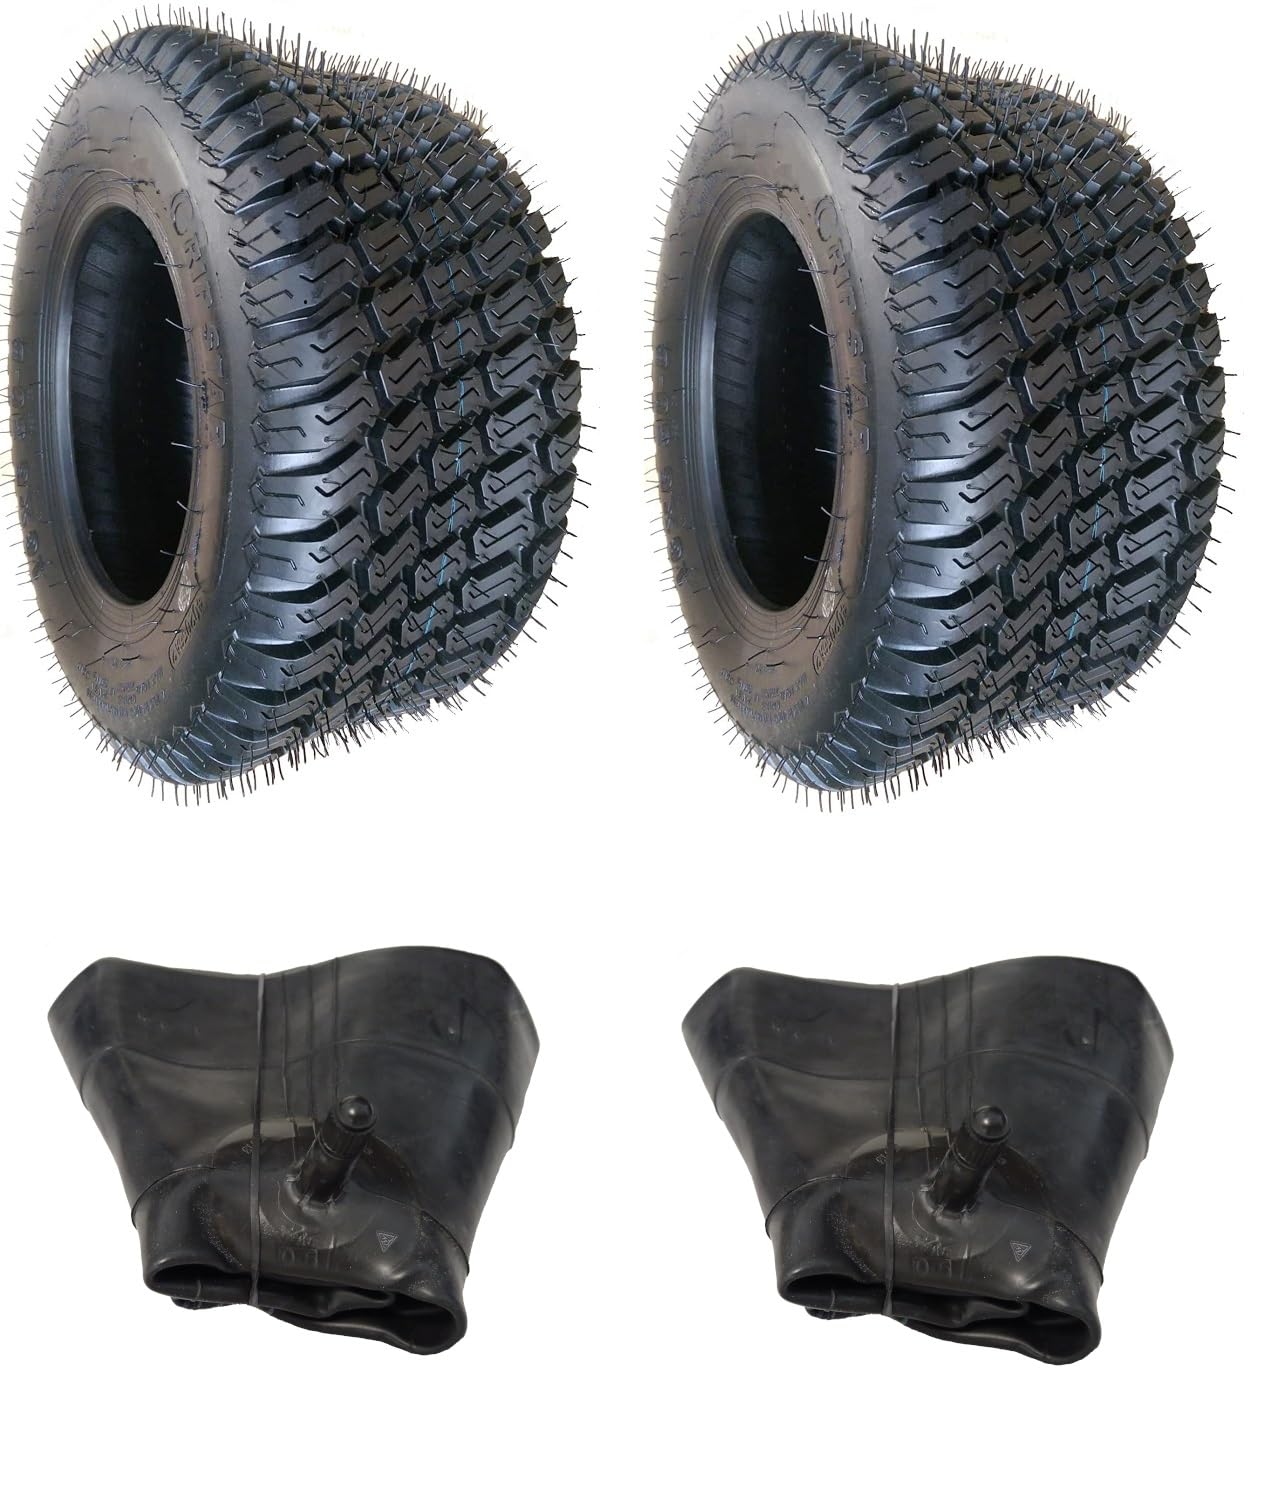 2x (Stk.) Schlauch + 2x 18x8.50-8 WAVE Rasenreifen Rasenmäherreifen Reifen für Rasentraktor und Aufsitzmäher 18 x 8.50-8 18x8.5-8 18 x 8.5-8 Reifenmantel Mantel von NARUBB